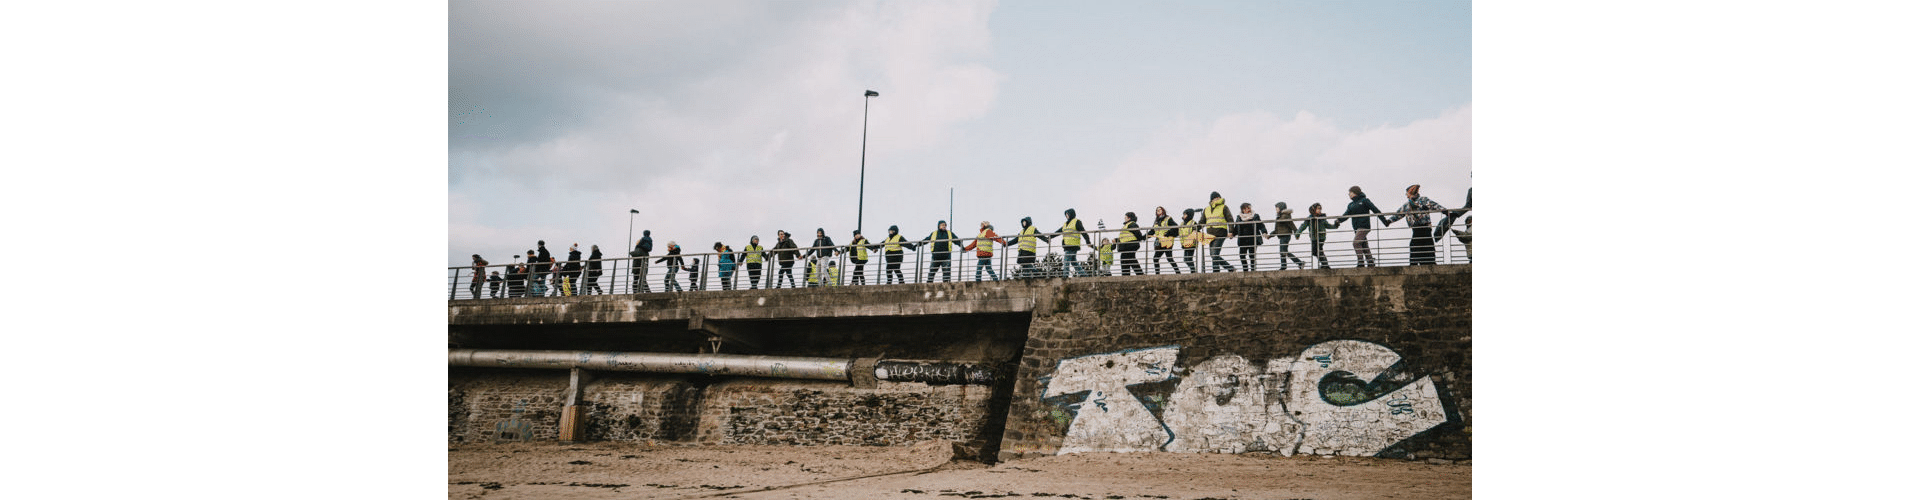 Chaîne humaine à Brest - Crédit photo : Antoine Borzeix